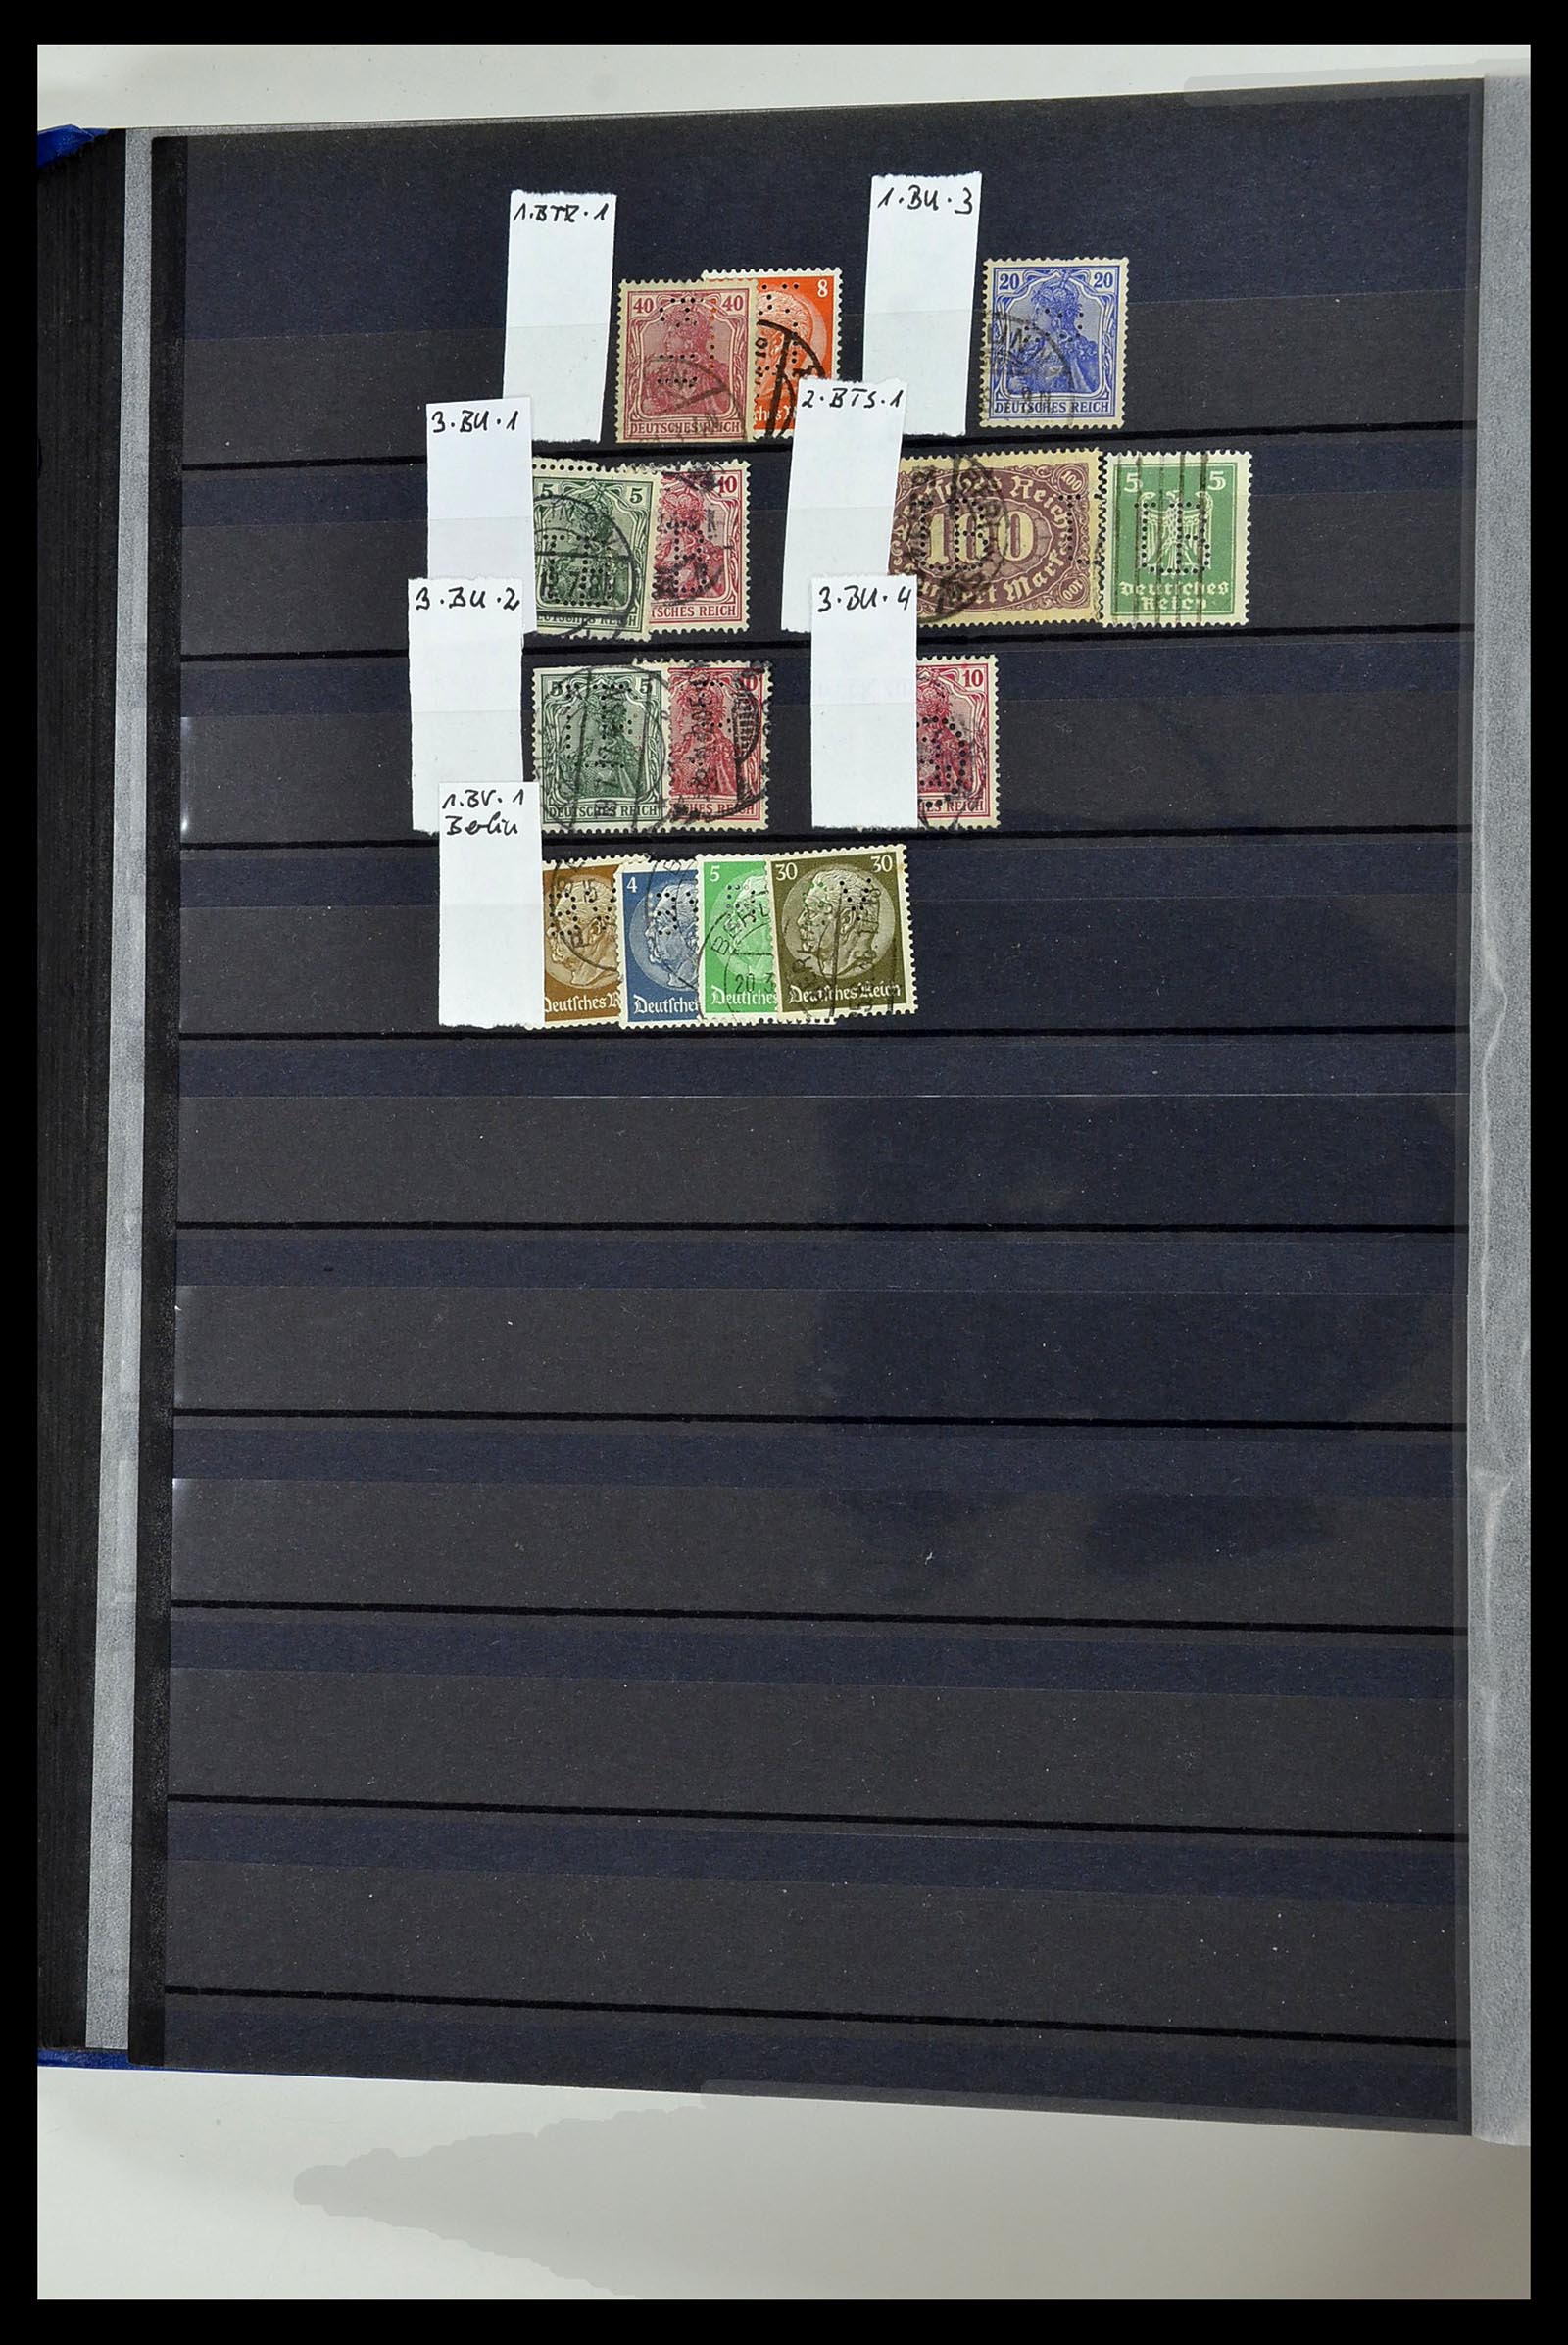 34432 071 - Stamp Collection 34432 German Reich perfins 1900-1933.